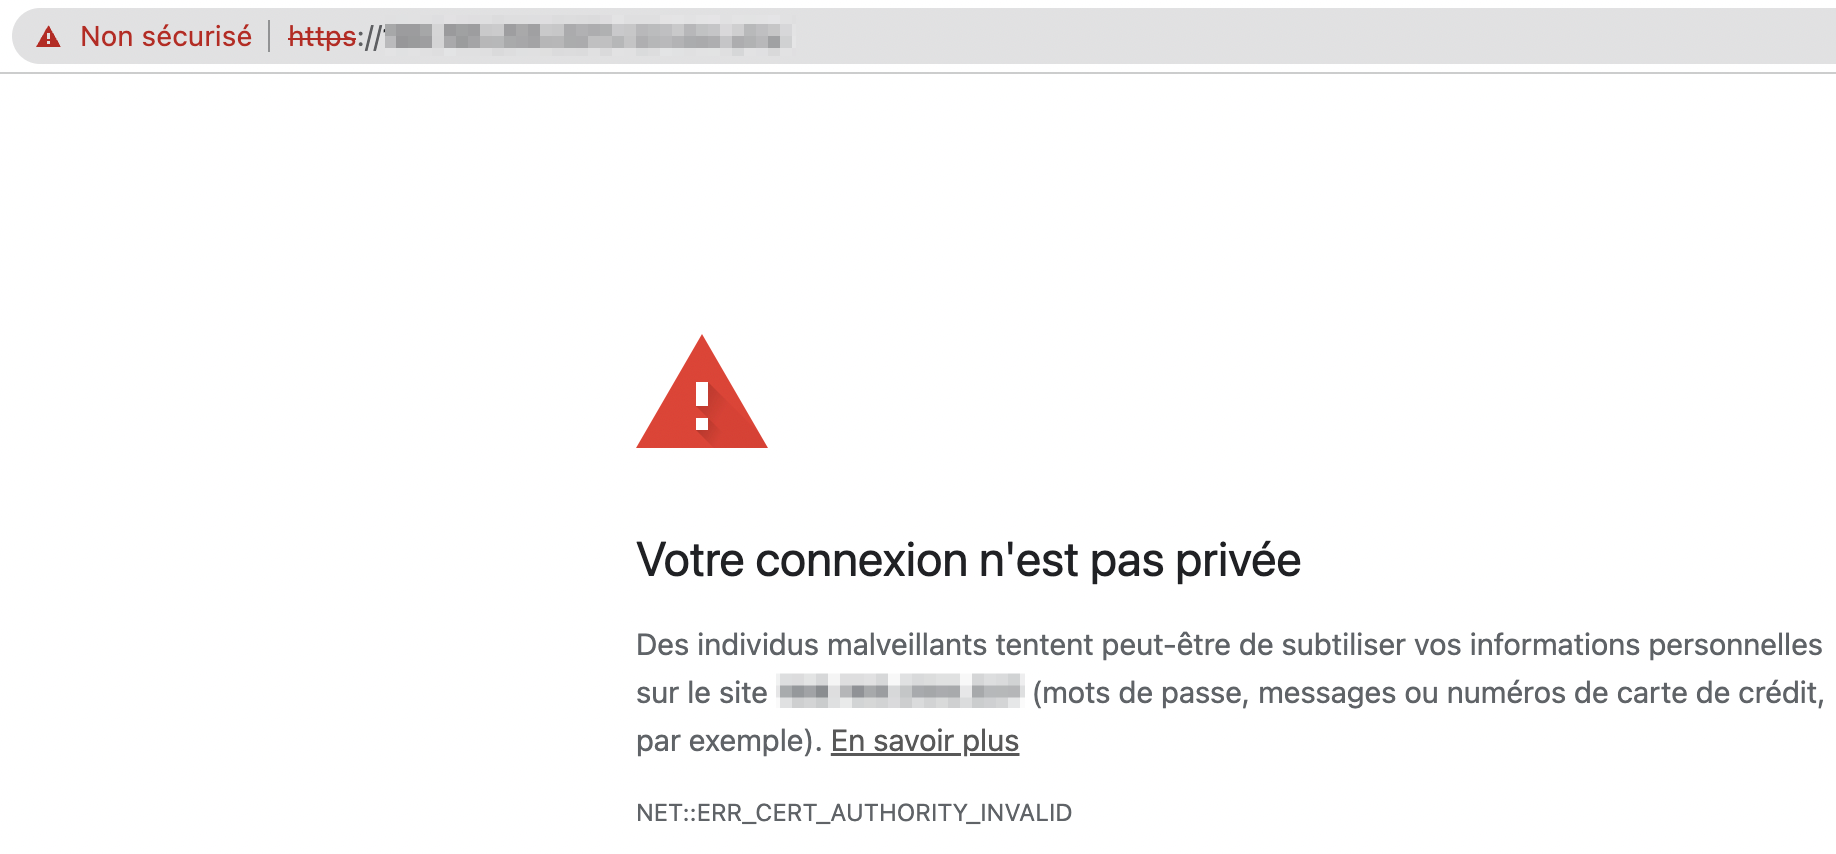 La page web d'un site affiche le message d'erreur suivant : Votre connexion n'est pas privée